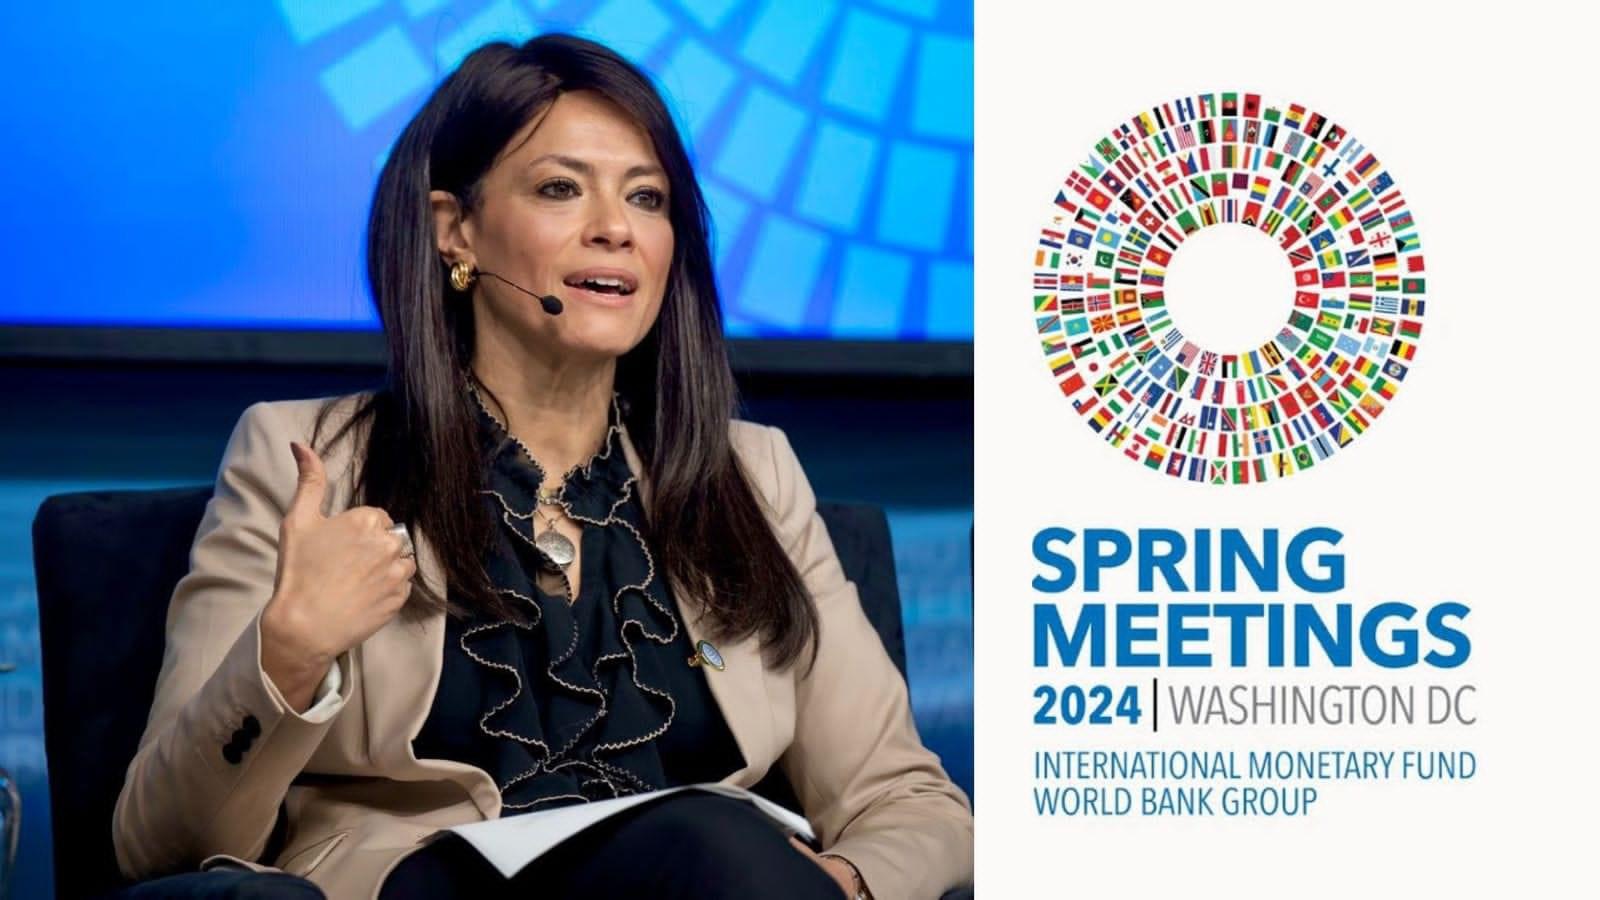 وزيرة التعاون الدولي تبدأ اليوم مشاركتها في اجتماعات الربيع لصندوق النقد والبنك الدوليين لعام 2024 بالعاصمة الأمريكية واشنطن